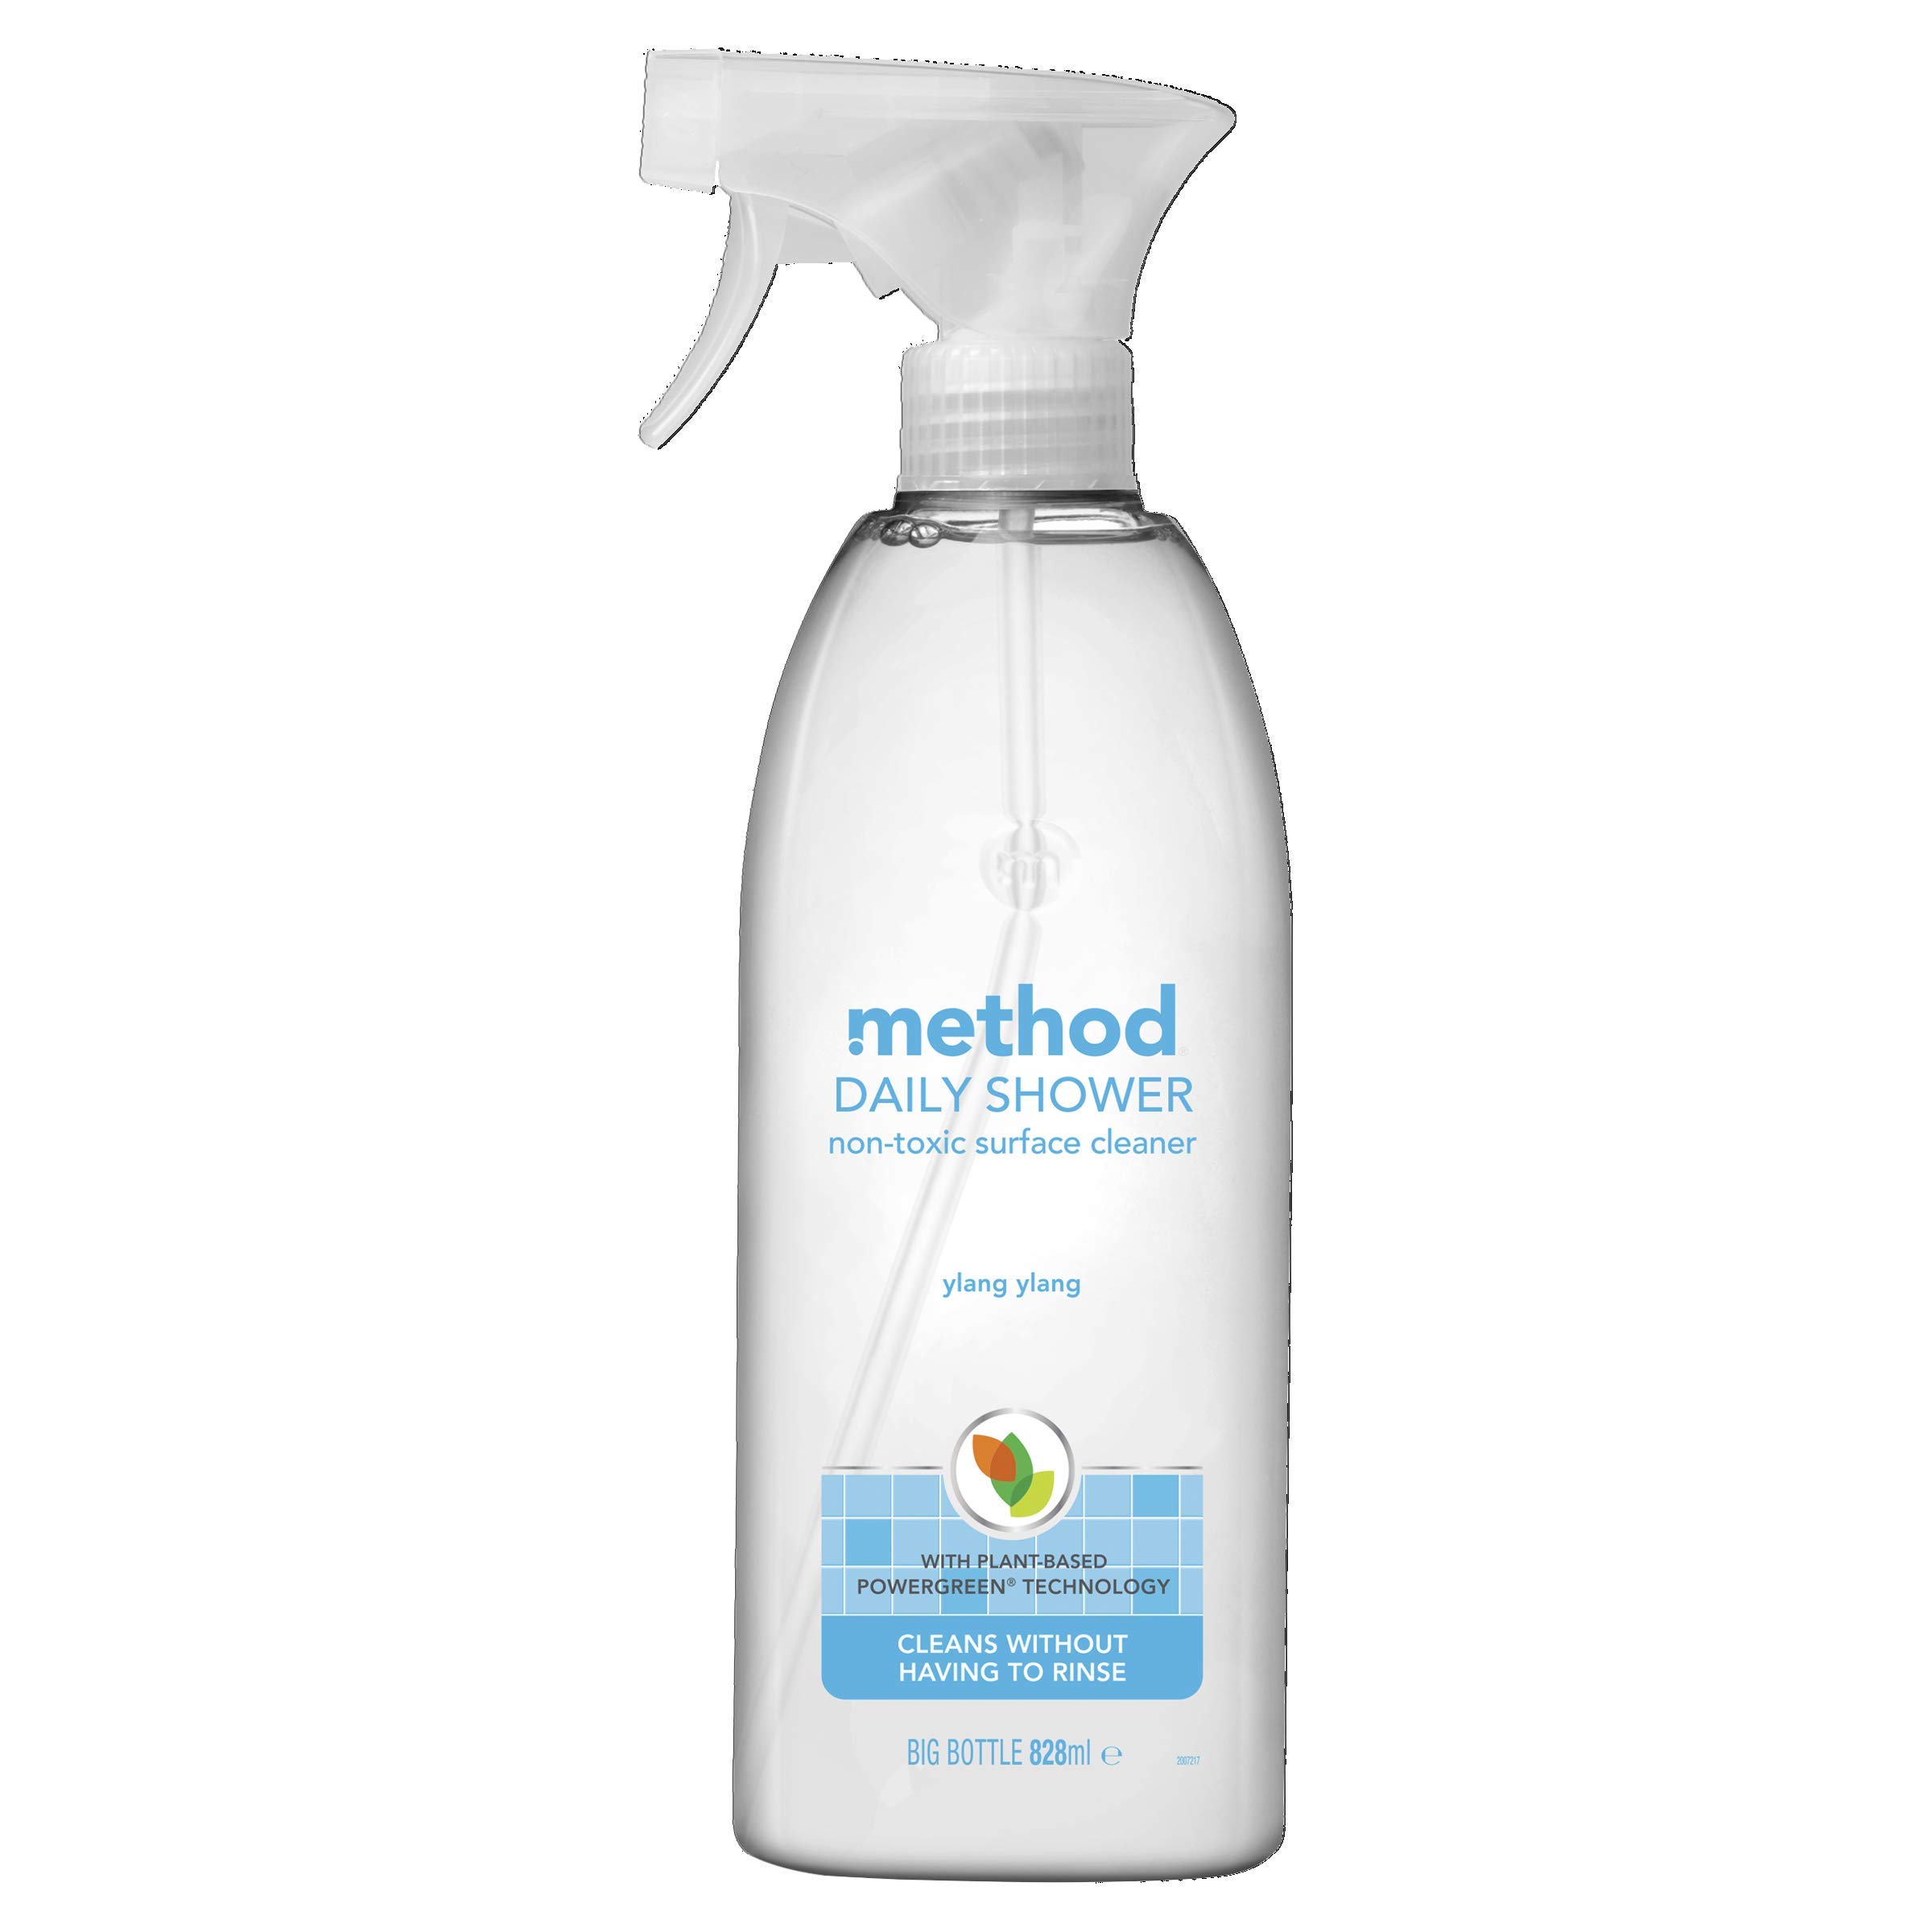 acheter Method Jet de douche quotidien - 828 ml tAsjOGIG2 en ligne